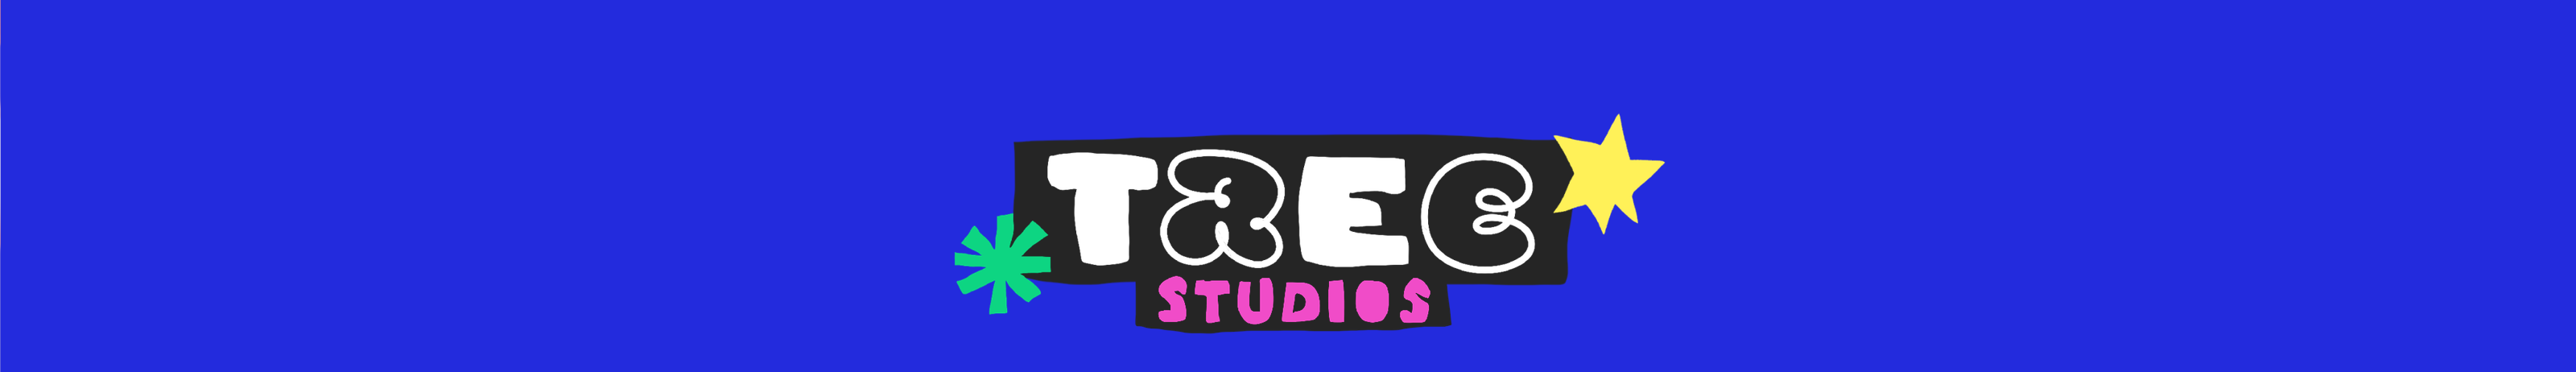 Banner de perfil de Tree Studios